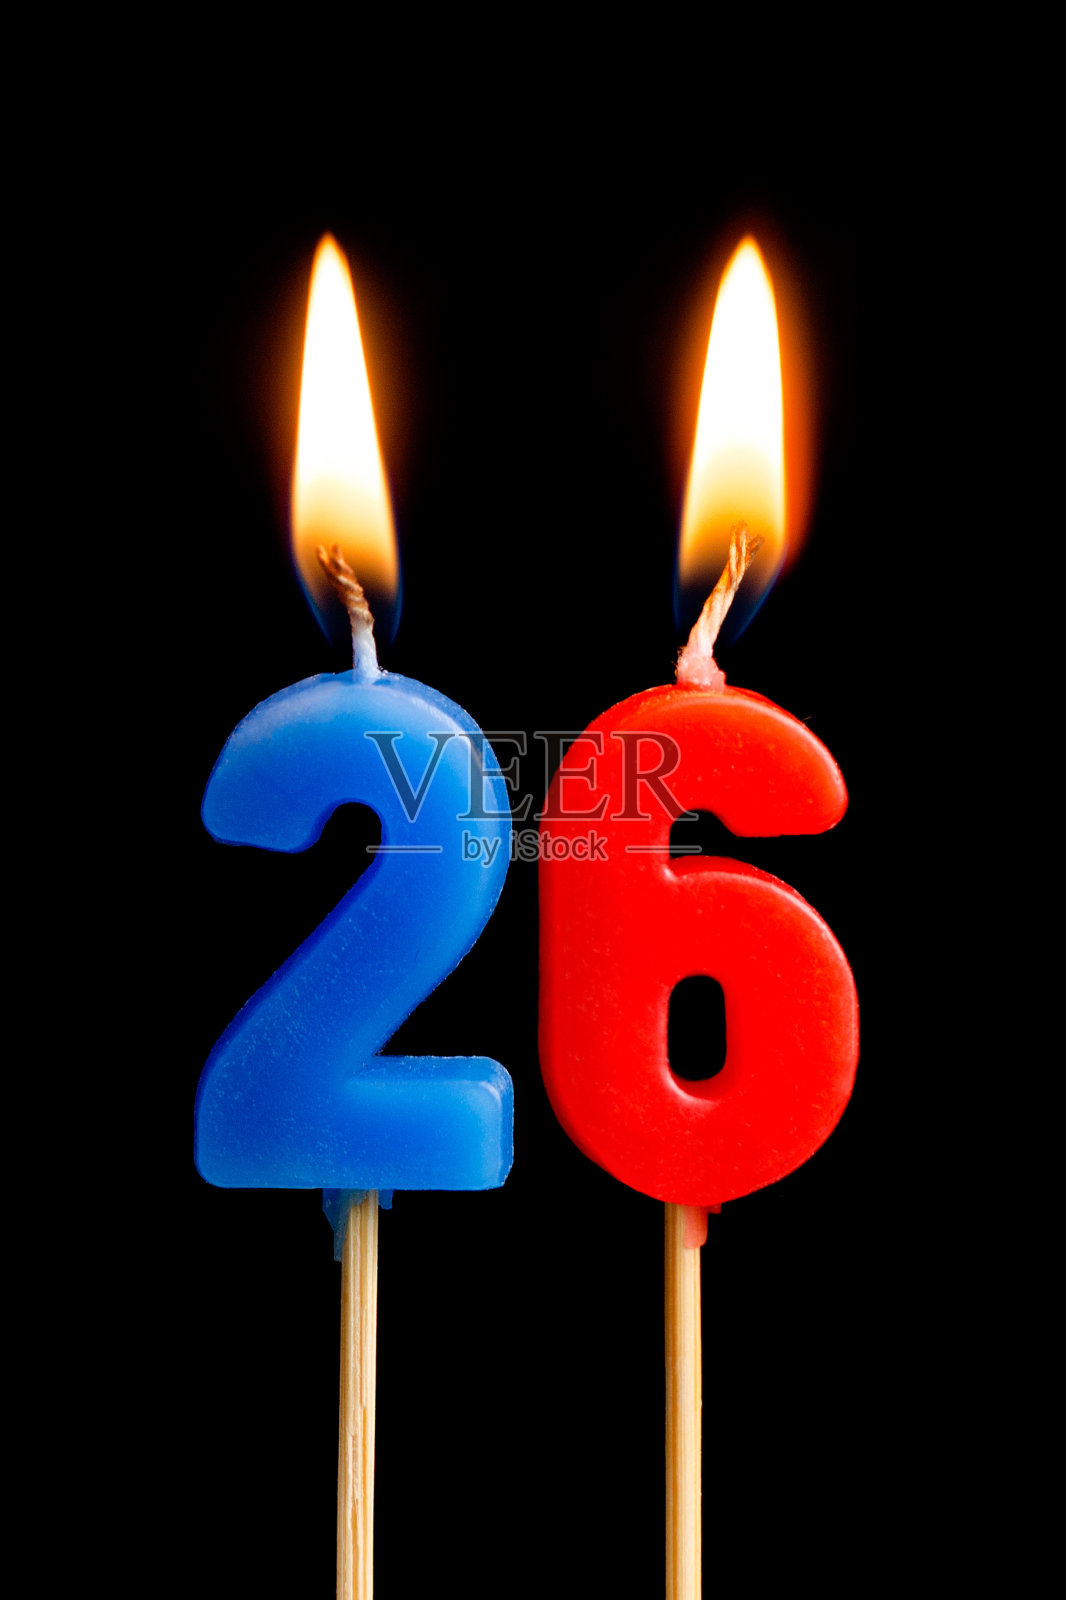 燃烧蜡烛26 26(数字，日期)的形式为蛋糕孤立在黑色的背景。庆祝生日、周年纪念、重要日期、节日、餐桌摆设的概念照片摄影图片